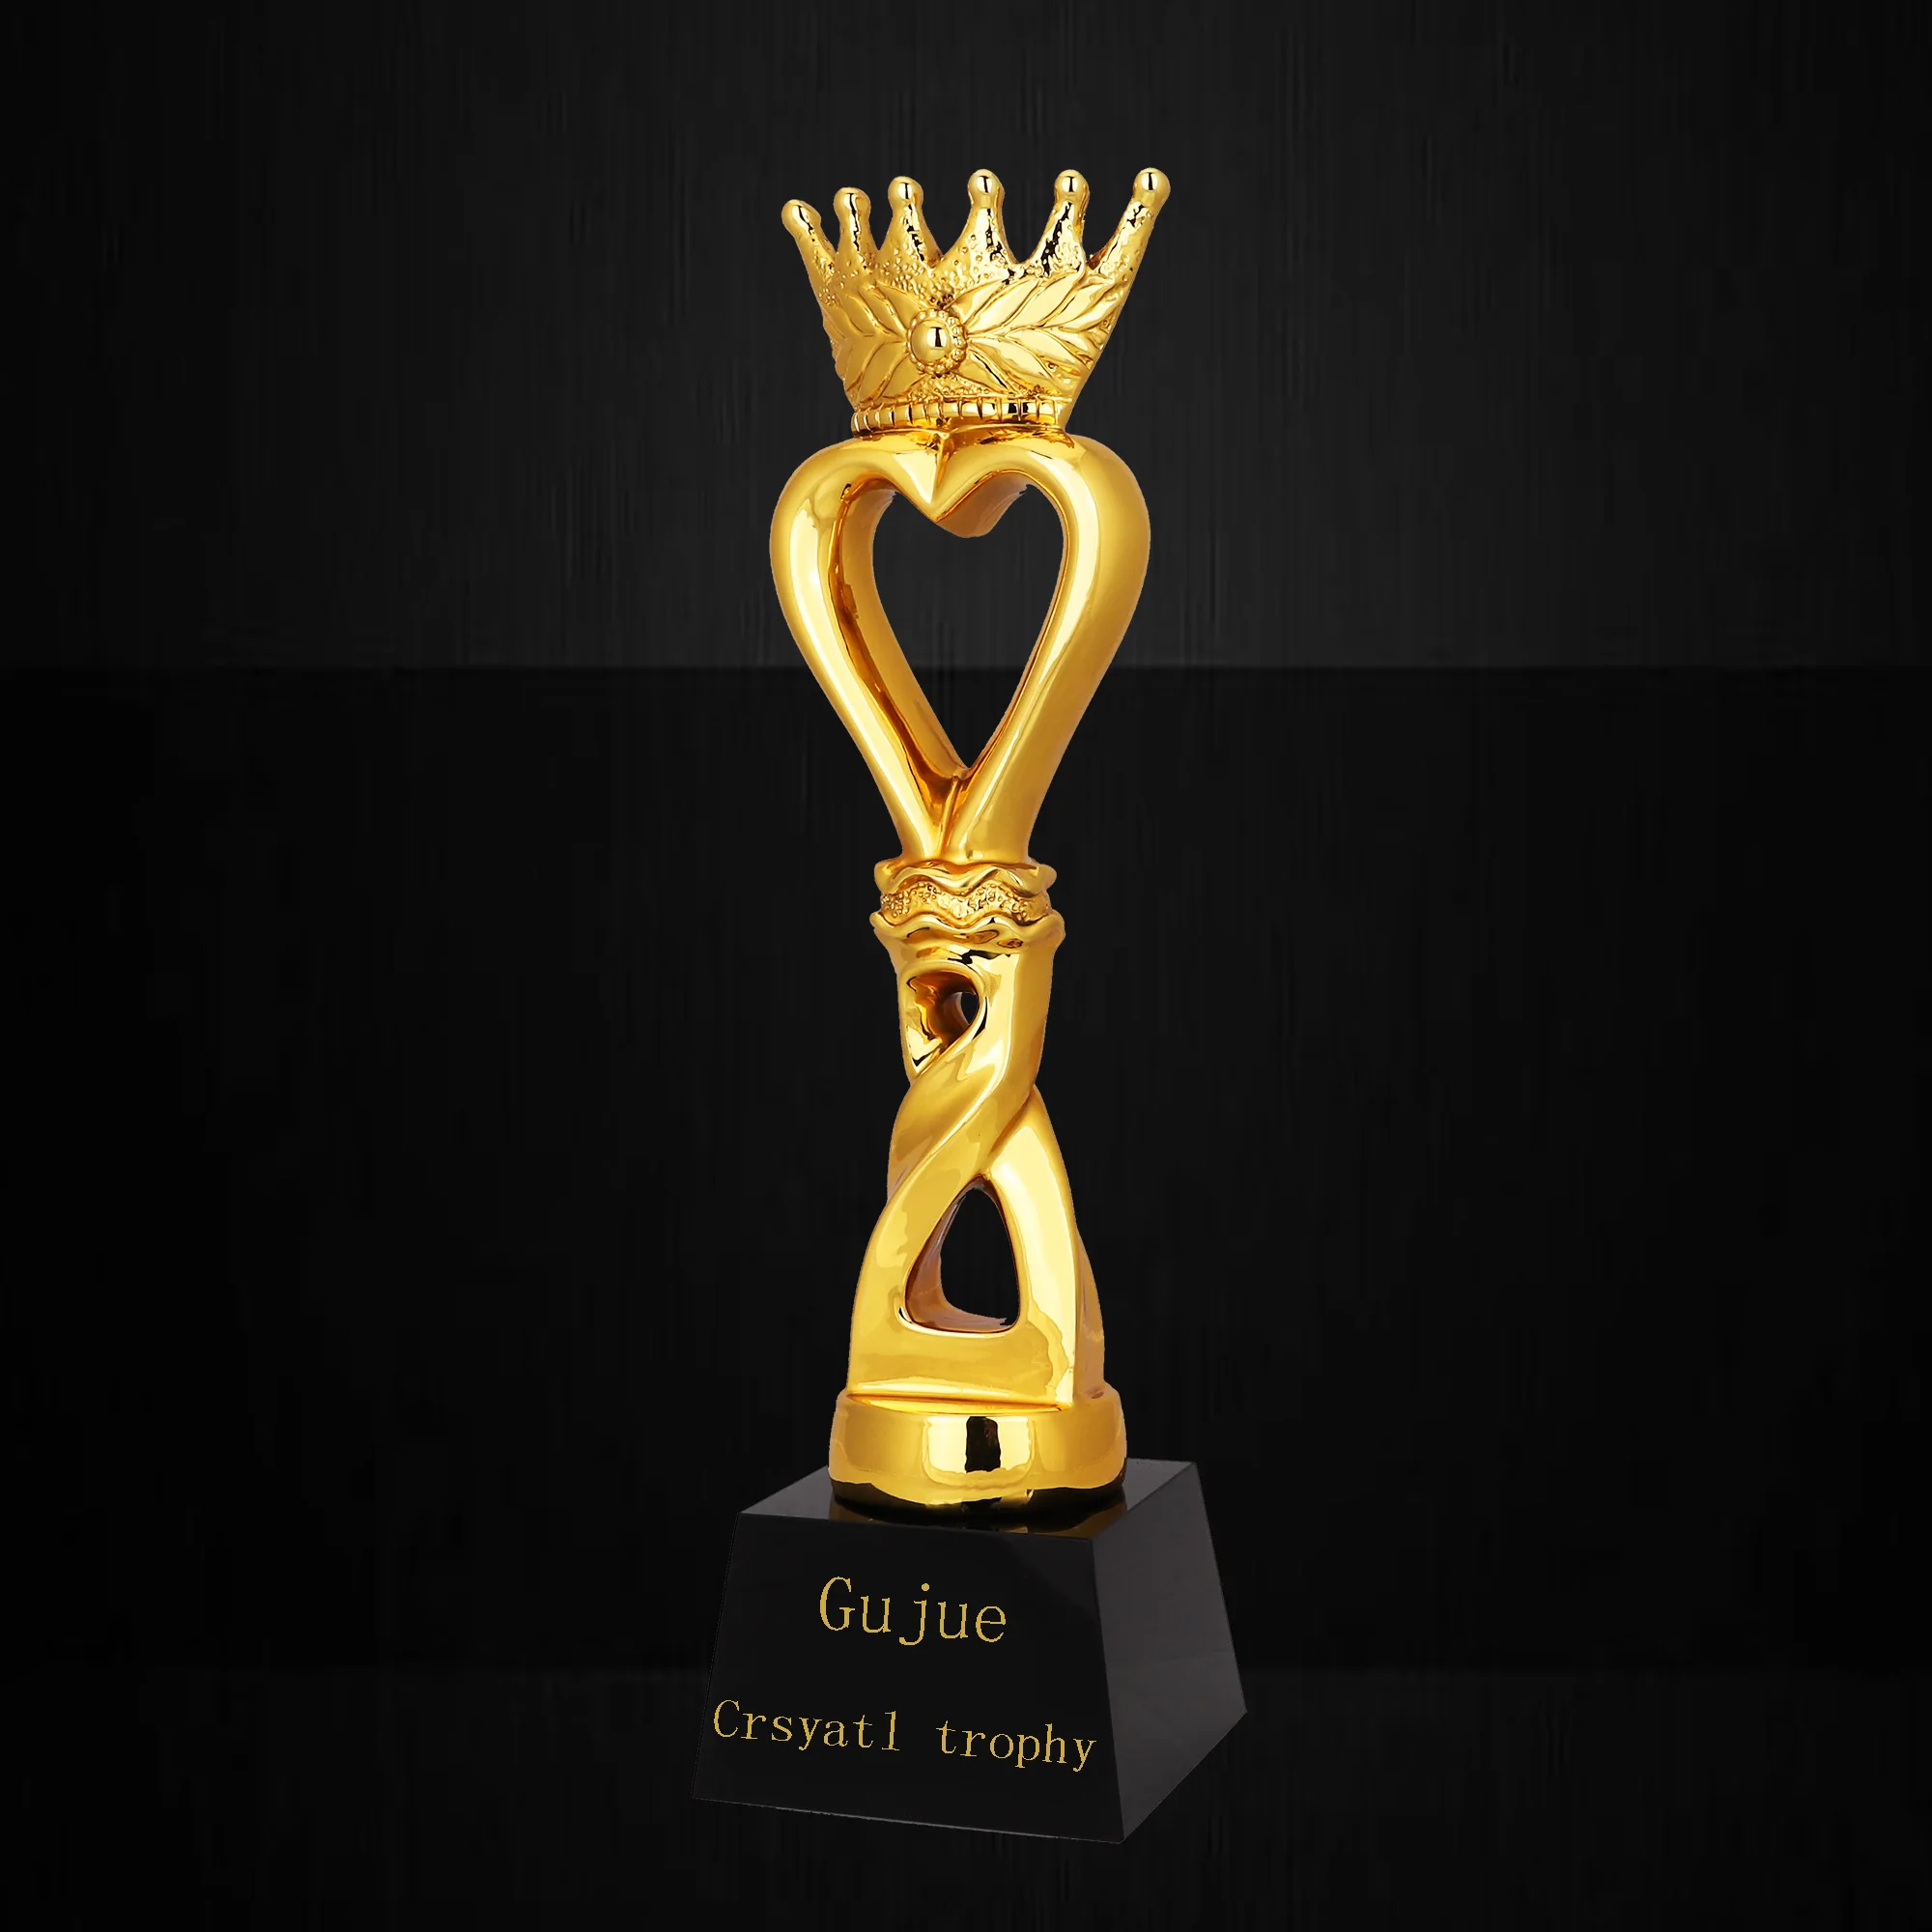 Estrela de alta qualidade rainha da beleza diamante coroa da representação histórica de cristal troféu